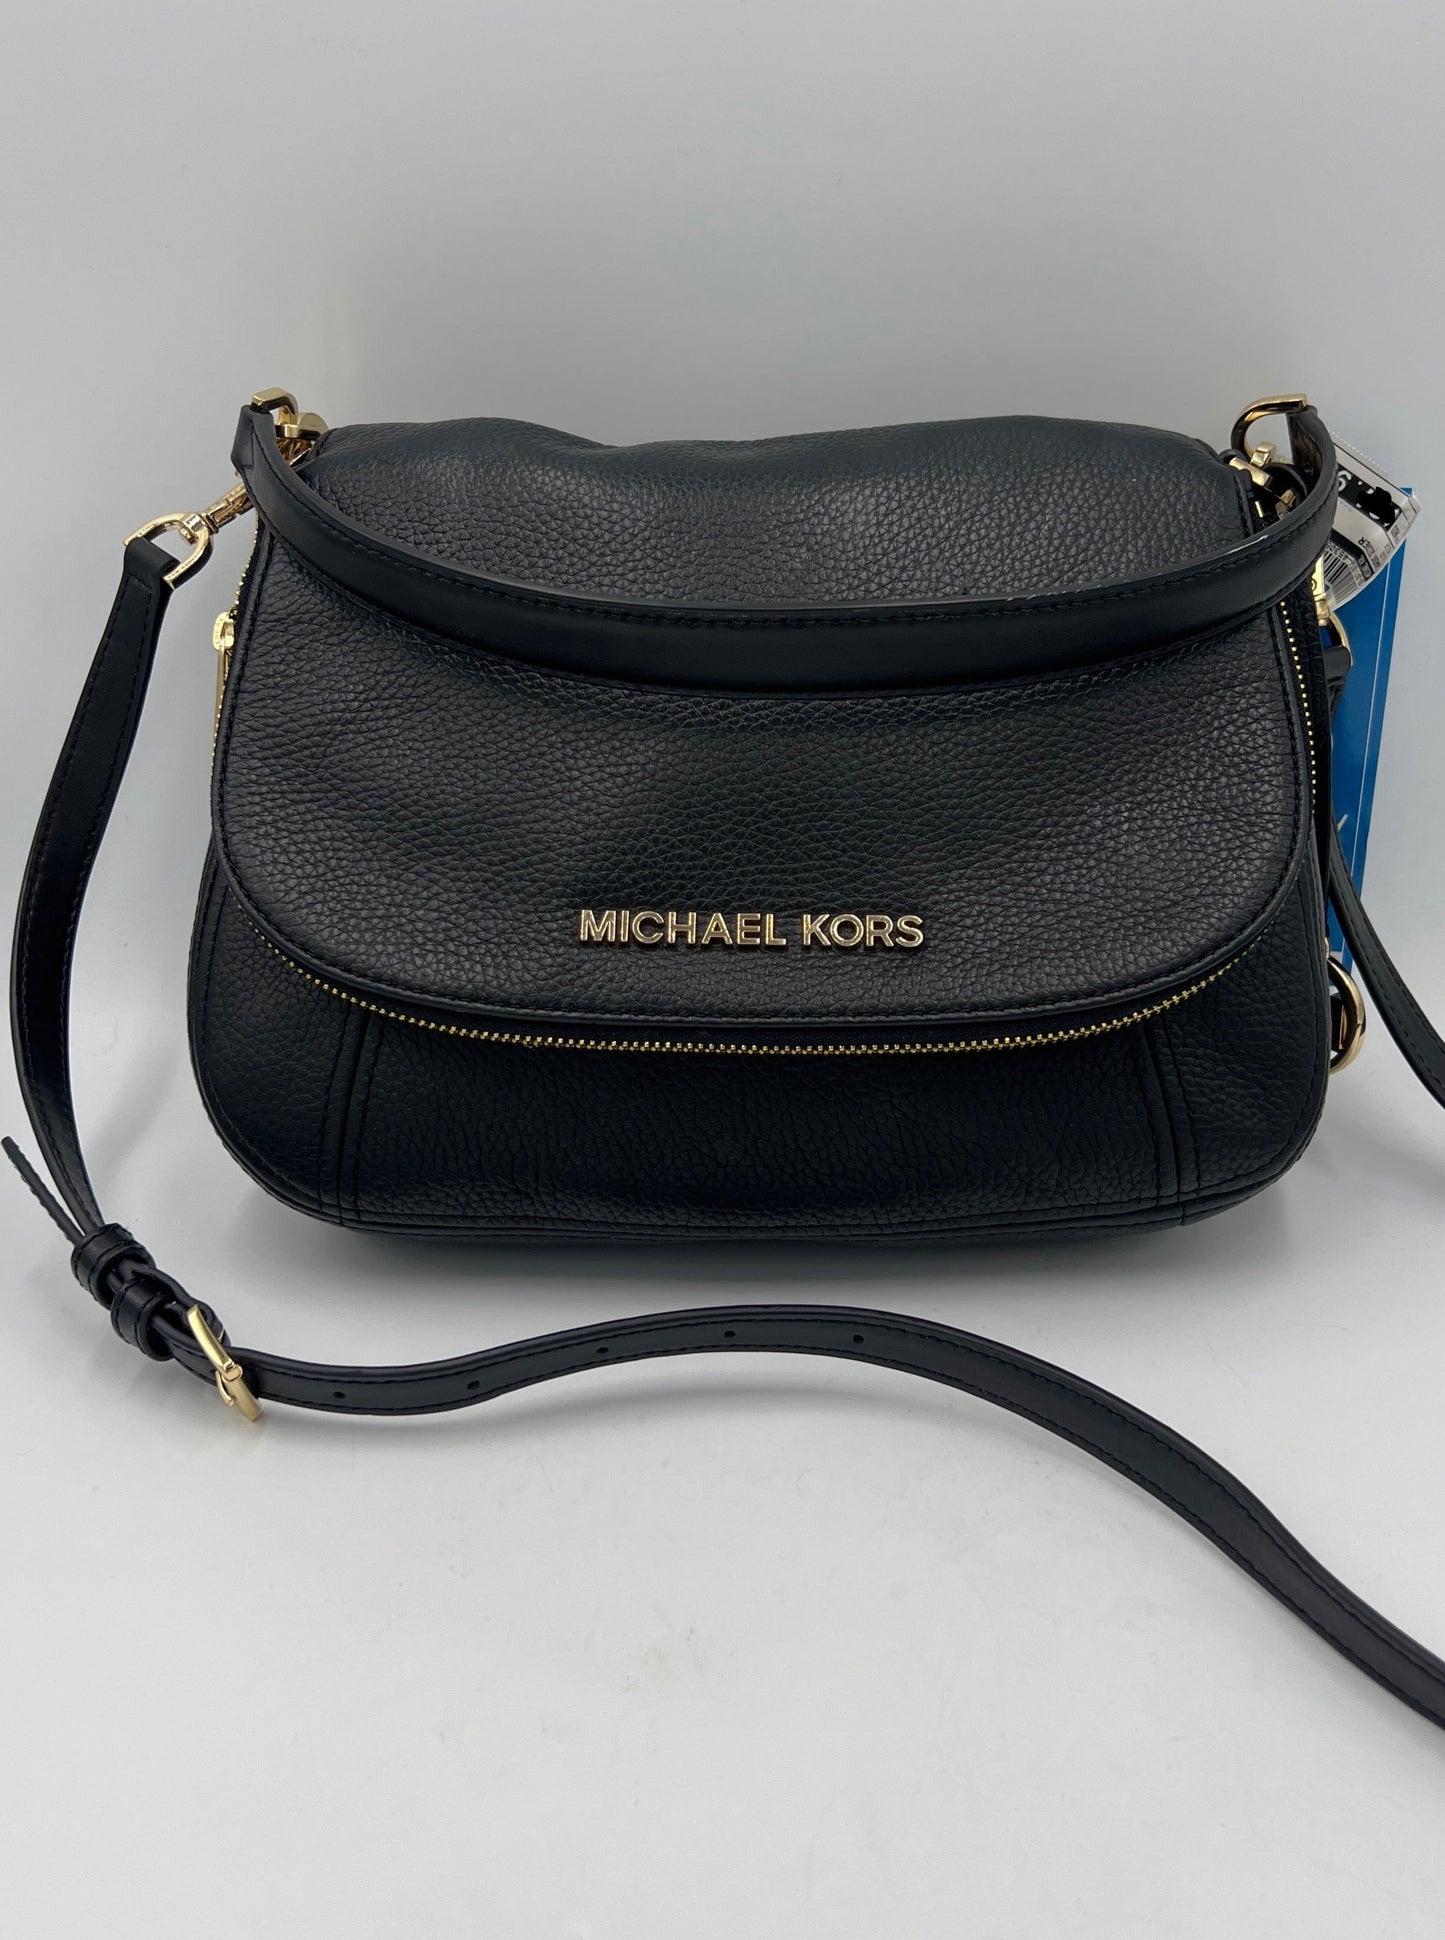 Crossbody / Handbag Designer By Michael Kors